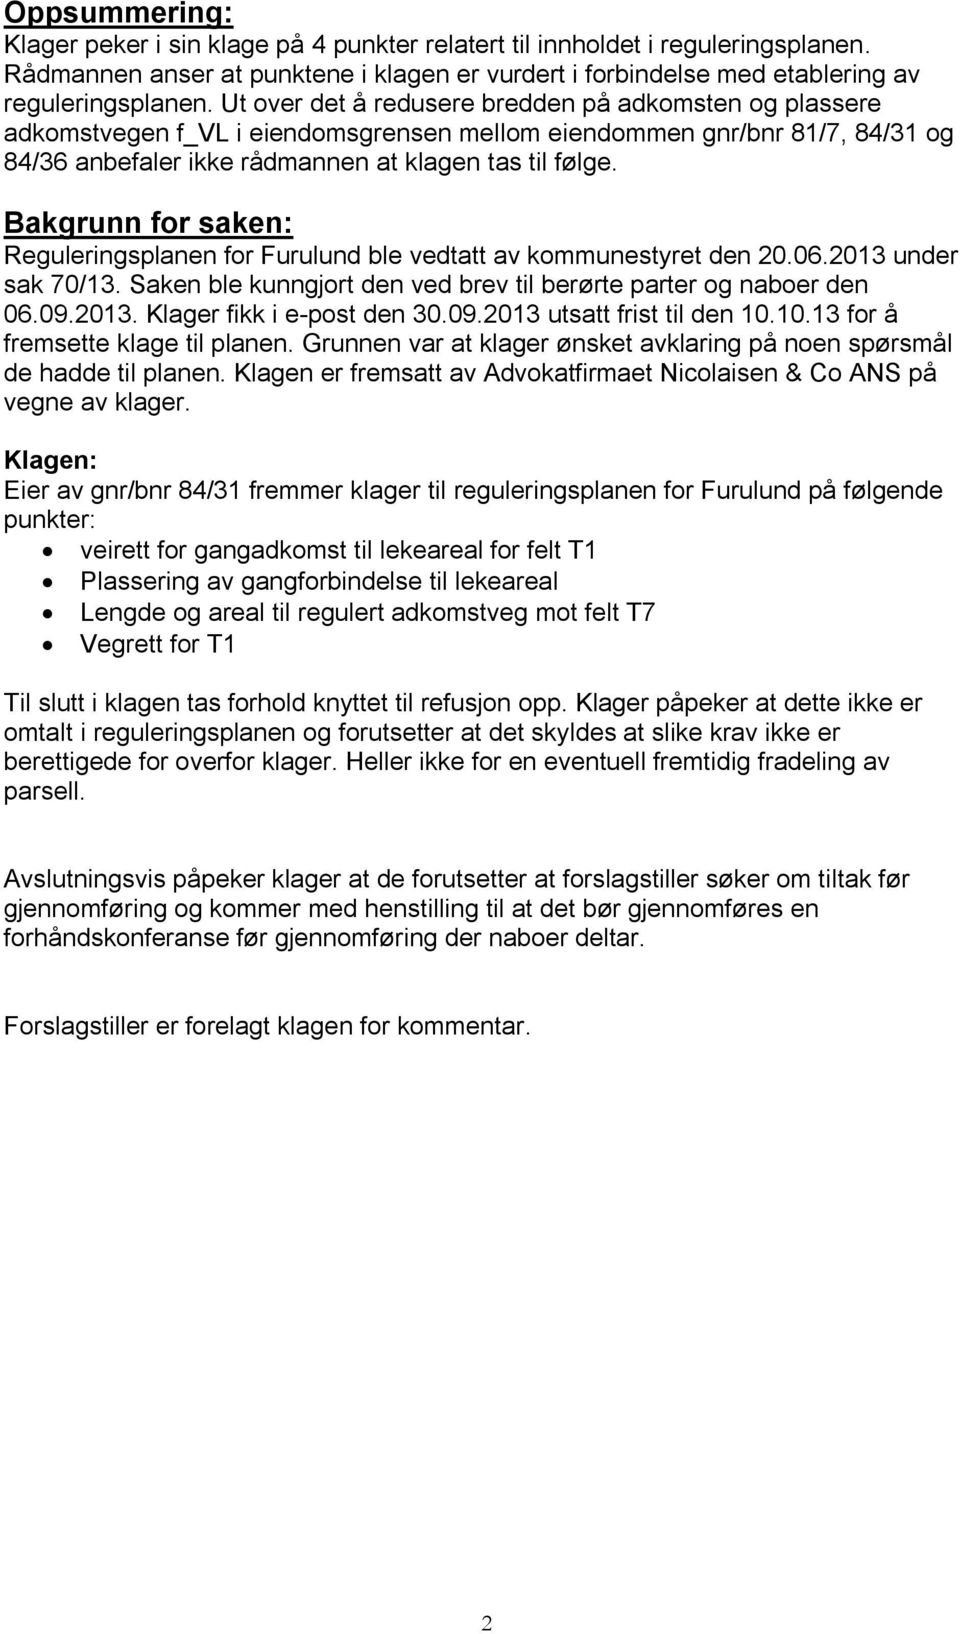 Bakgrunn for saken: Reguleringsplanen for Furulund ble vedtatt av kommunestyret den 20.06.2013 under sak 70/13. Saken ble kunngjort den ved brev til berørte parter og naboer den 06.09.2013. Klager fikk i e-post den 30.